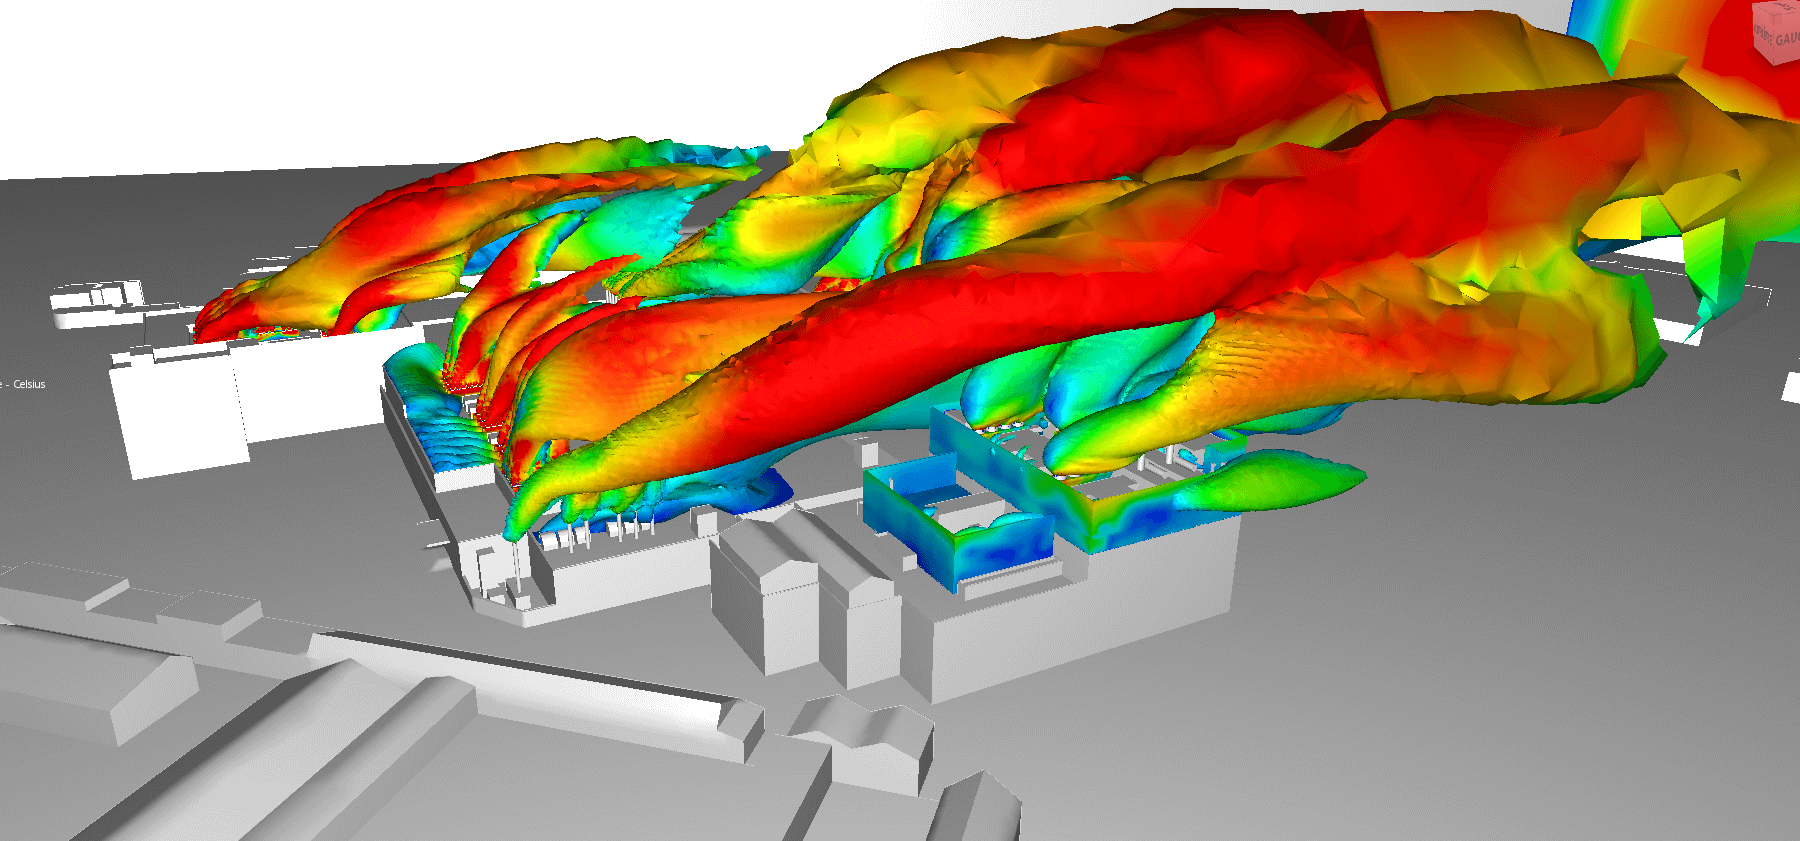 Simulation CFD - Etude panache thermique data center - basse température